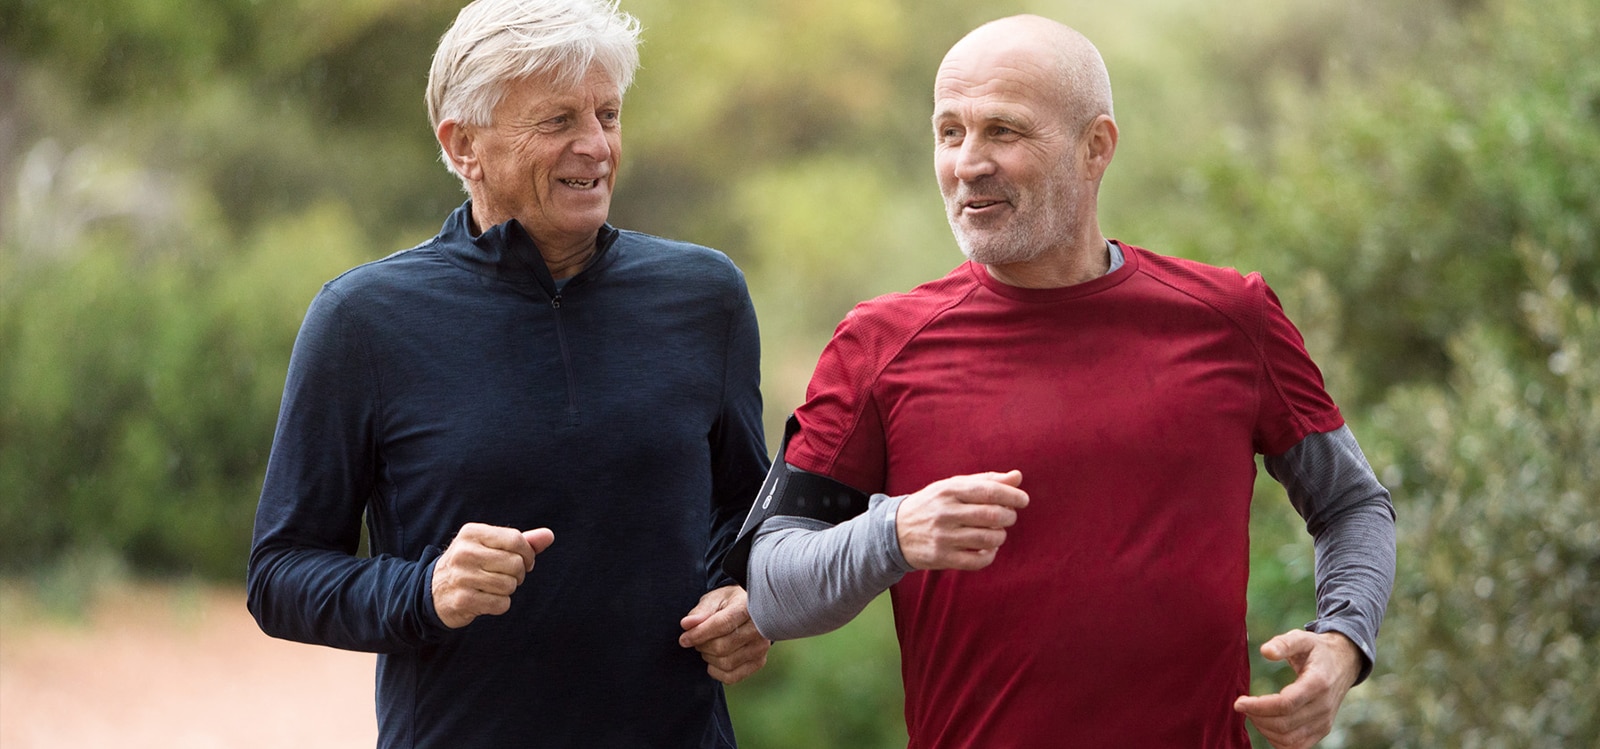 Twee mannen van tussen de 50 en 60, aan het joggen